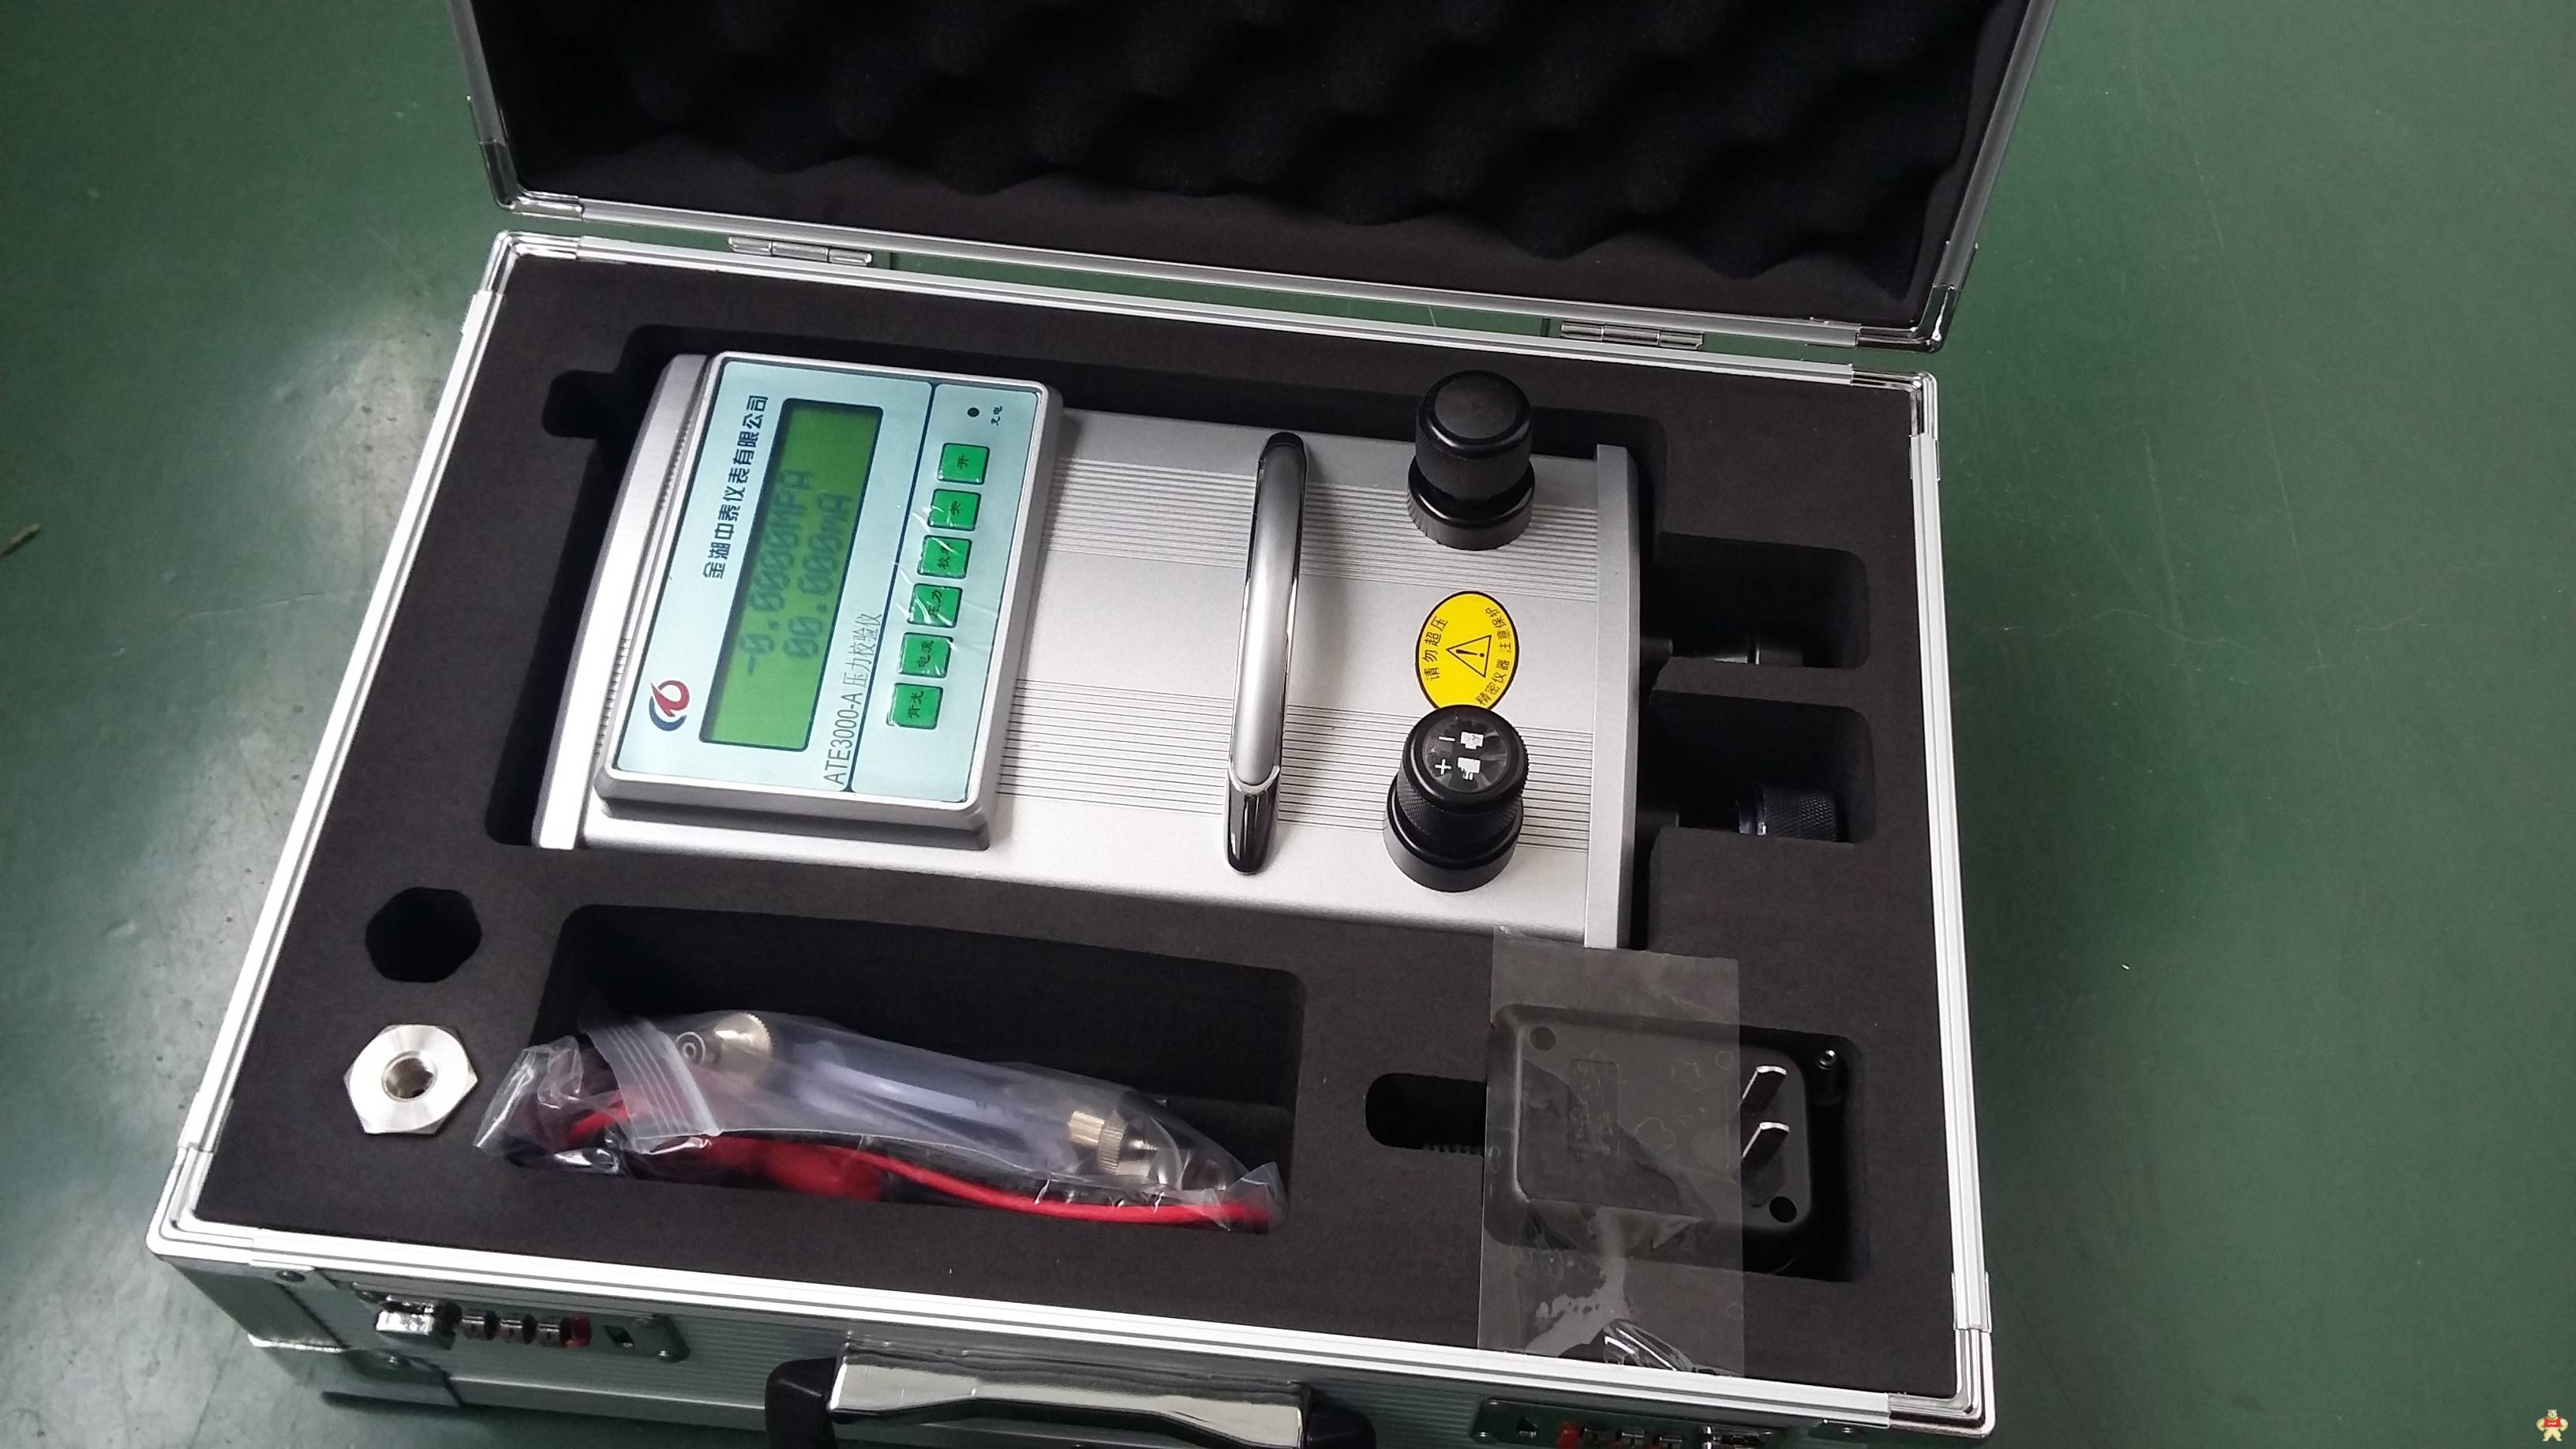 手持压力校验仪便携式智能数字型内置压力源ATE3000金湖中泰仪表厂家销售 